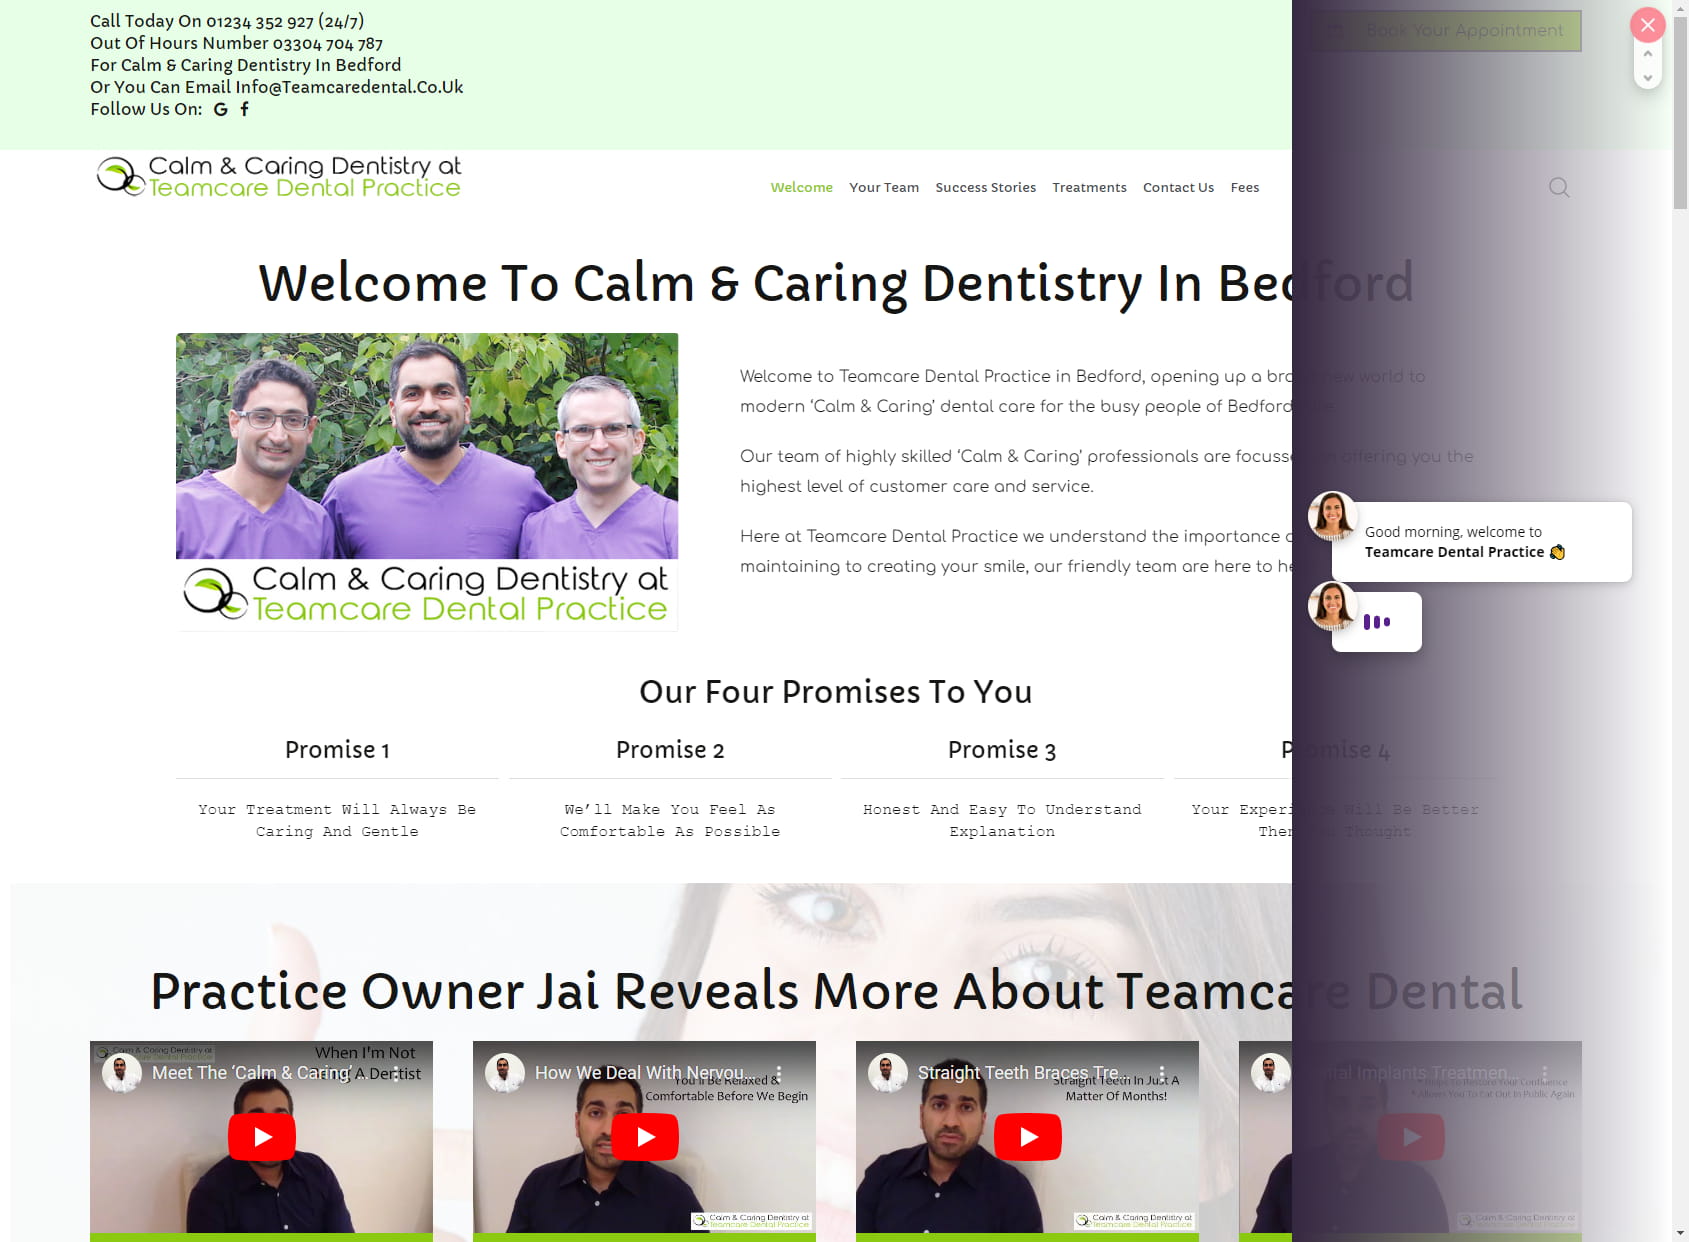 Teamcare Dental Practice